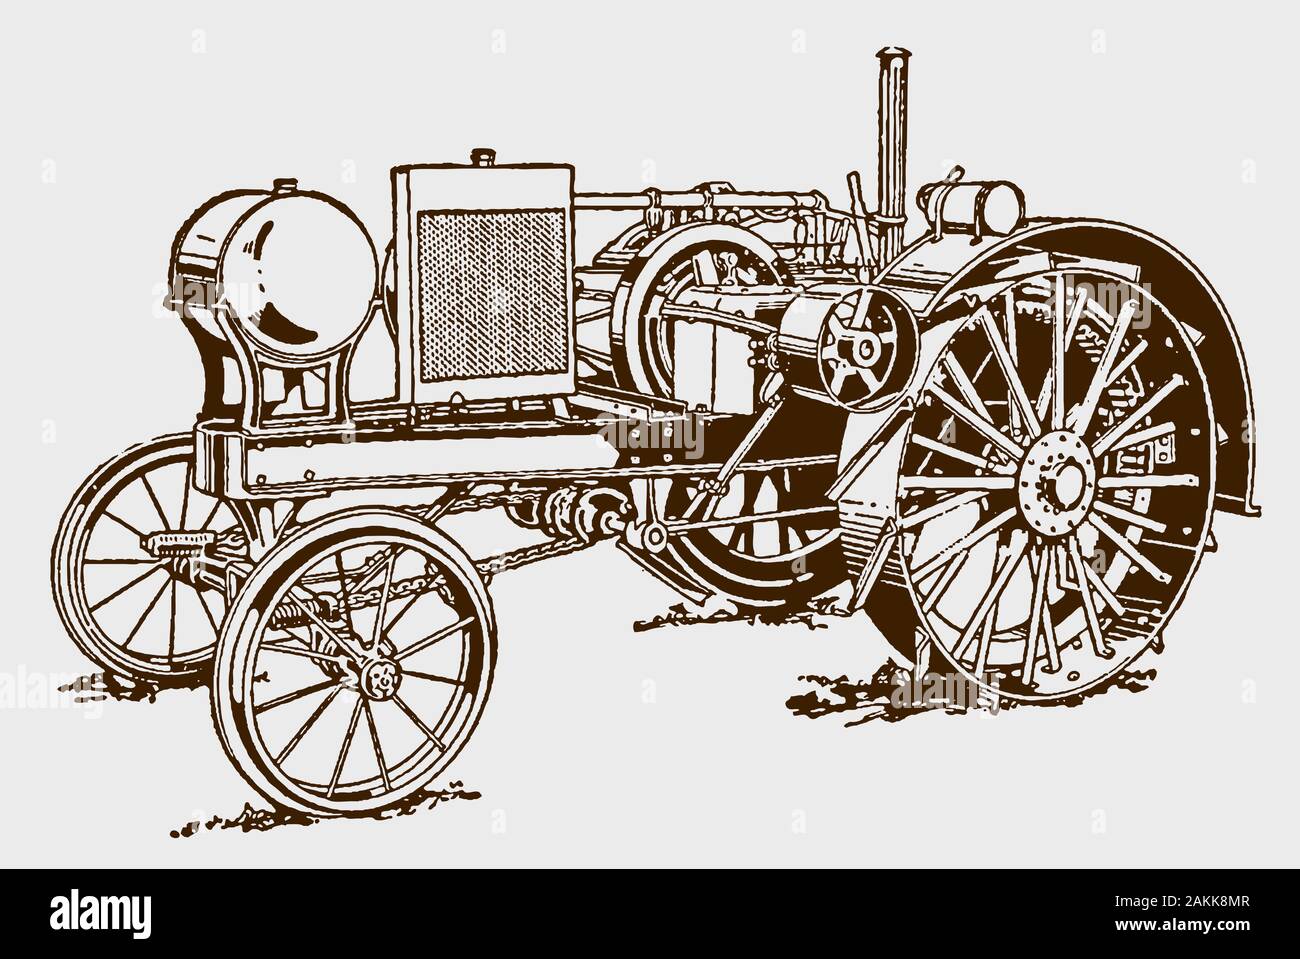 Historische Kerosin Traktor in drei Viertel der Vorderansicht. Abbildung: Nach einem Stich aus dem frühen 20. Jahrhundert Stock Vektor